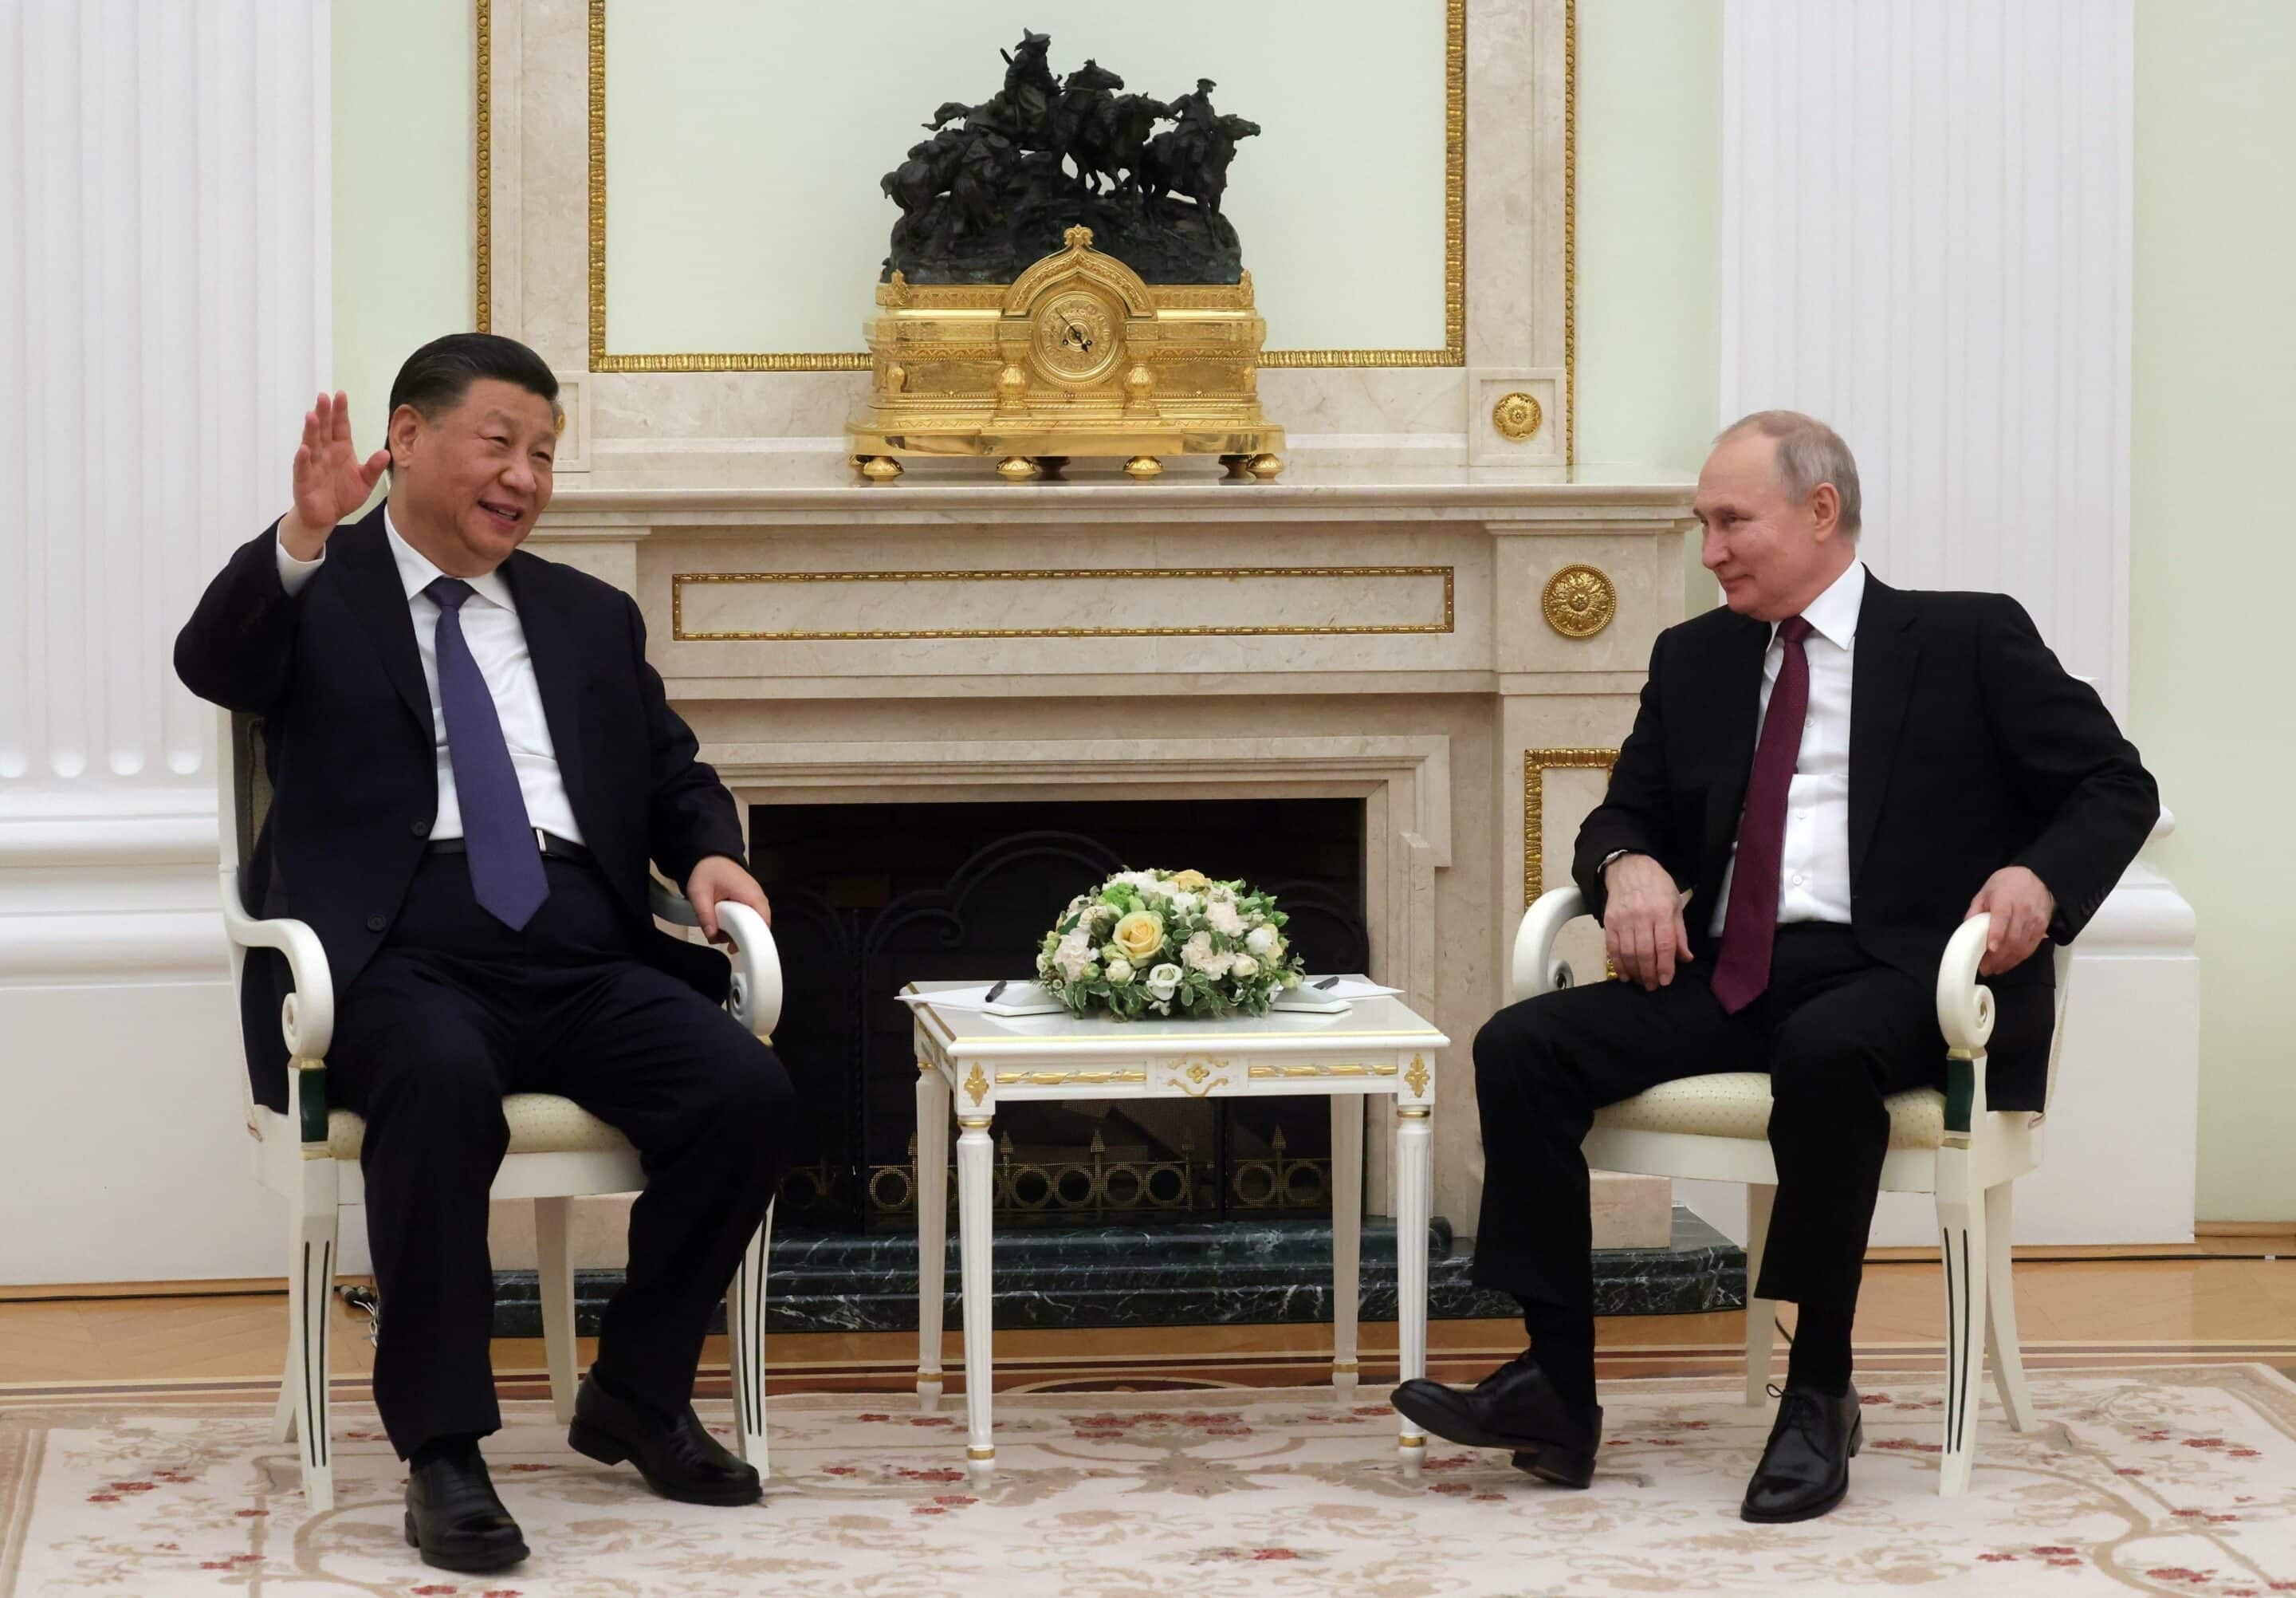 Le président chinois Xi Jinping s'adresse au président russe Vladimir Poutine lors de leur rencontre au Kremlin à Moscou, en Russie, le 20 mars 2023.
Sergei Karpukhin/AP/SIPA